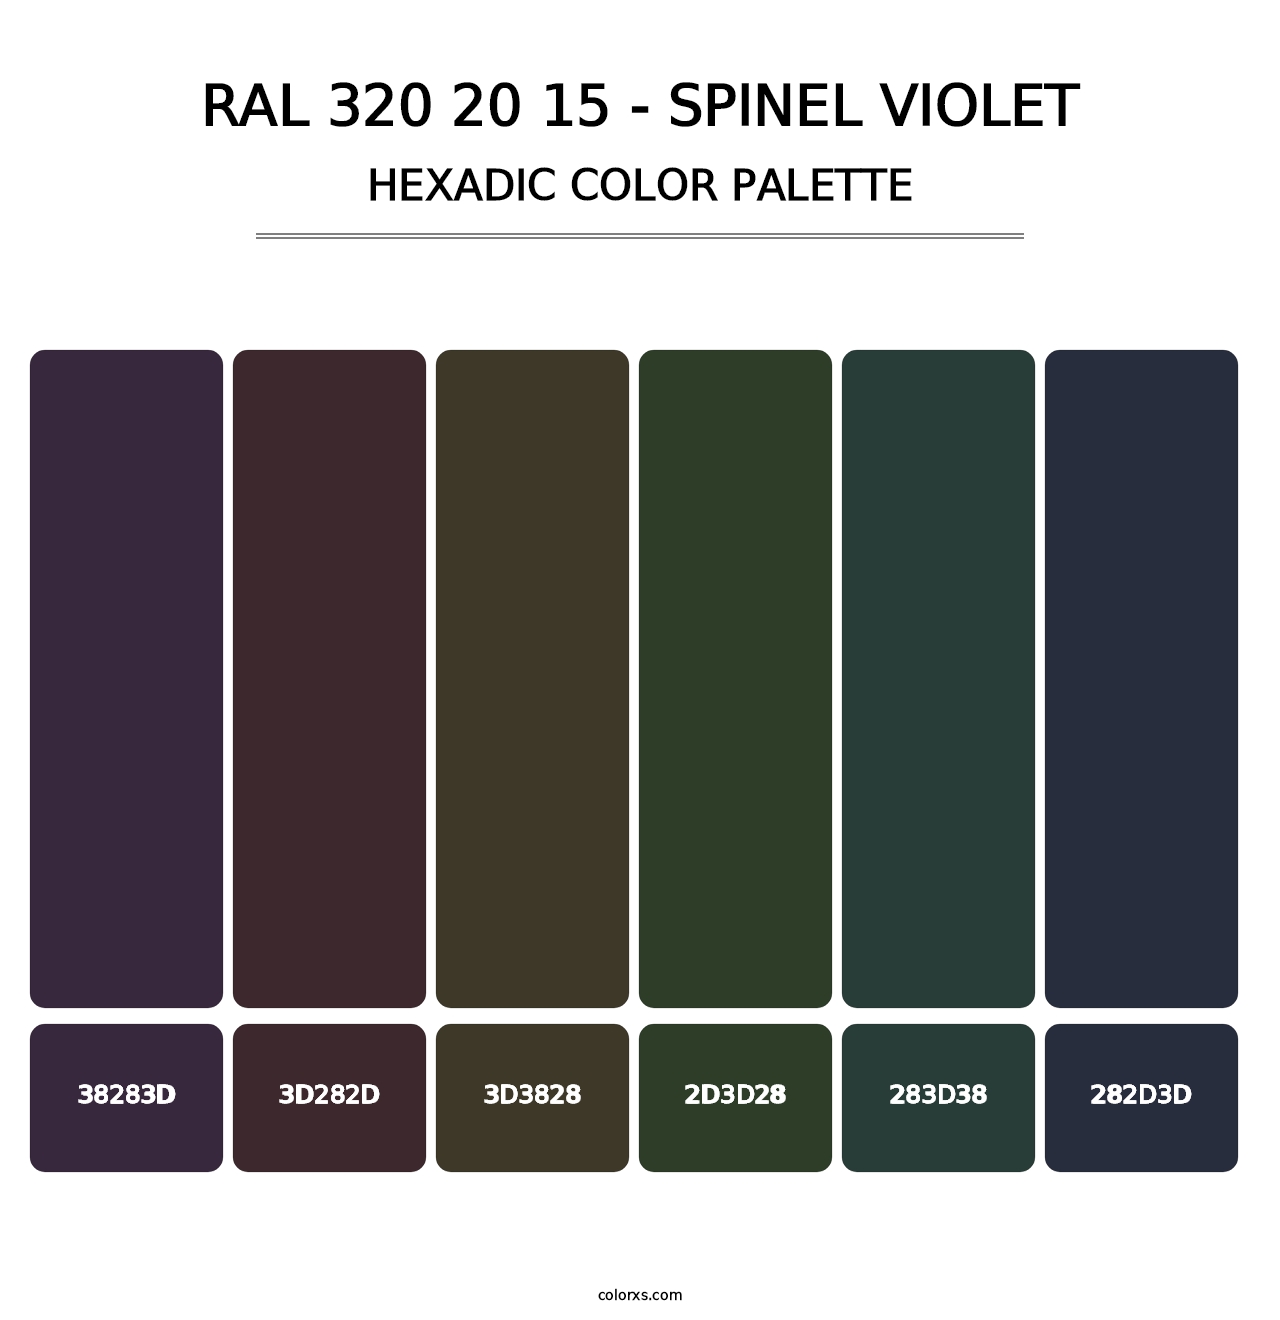 RAL 320 20 15 - Spinel Violet - Hexadic Color Palette